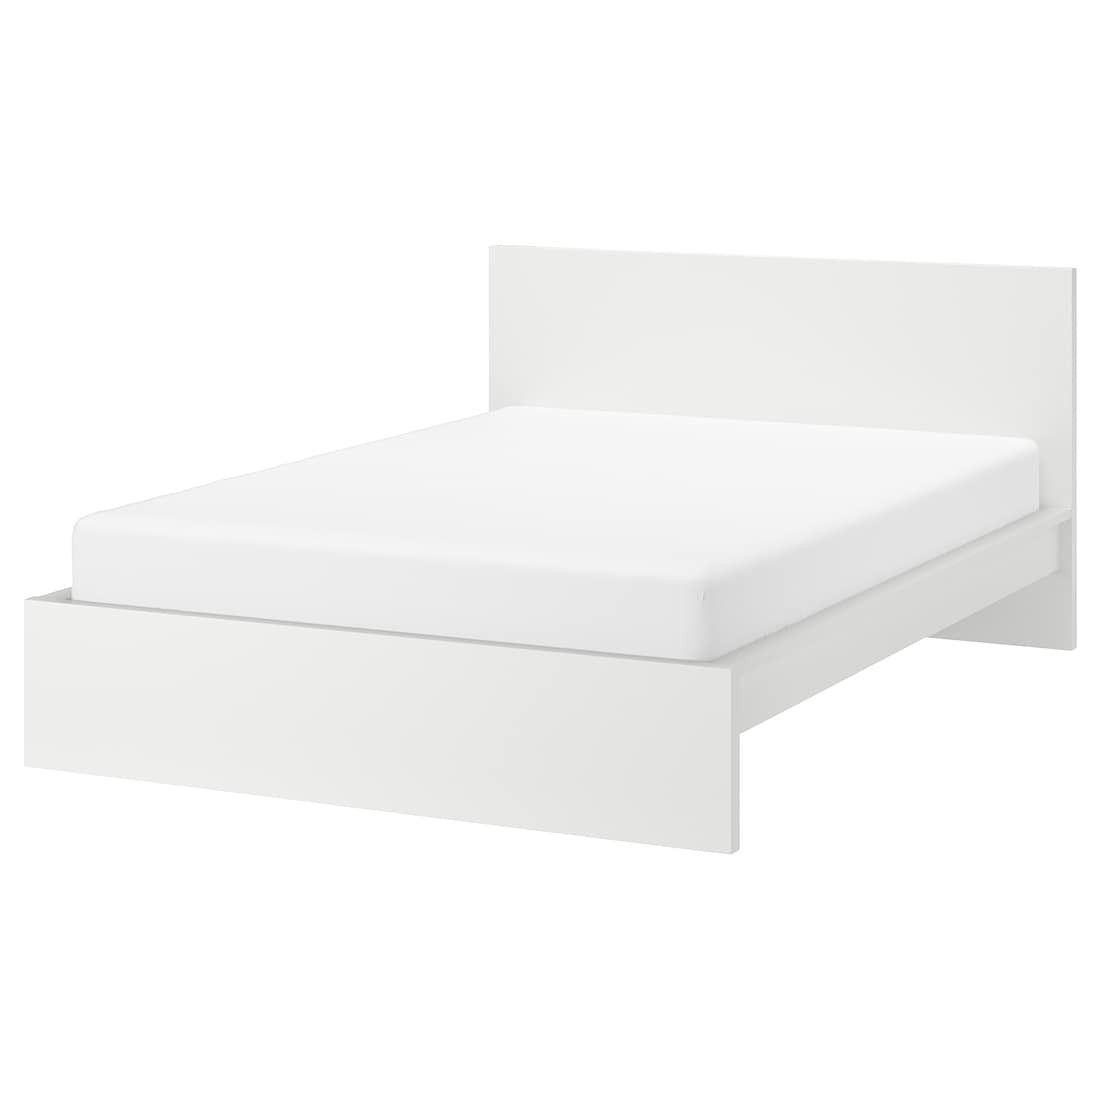 IKEA MALM МАЛЬМ Кровать двуспальная, высокий, белый / Линдбаден, 140x200 см 59494962 594.949.62